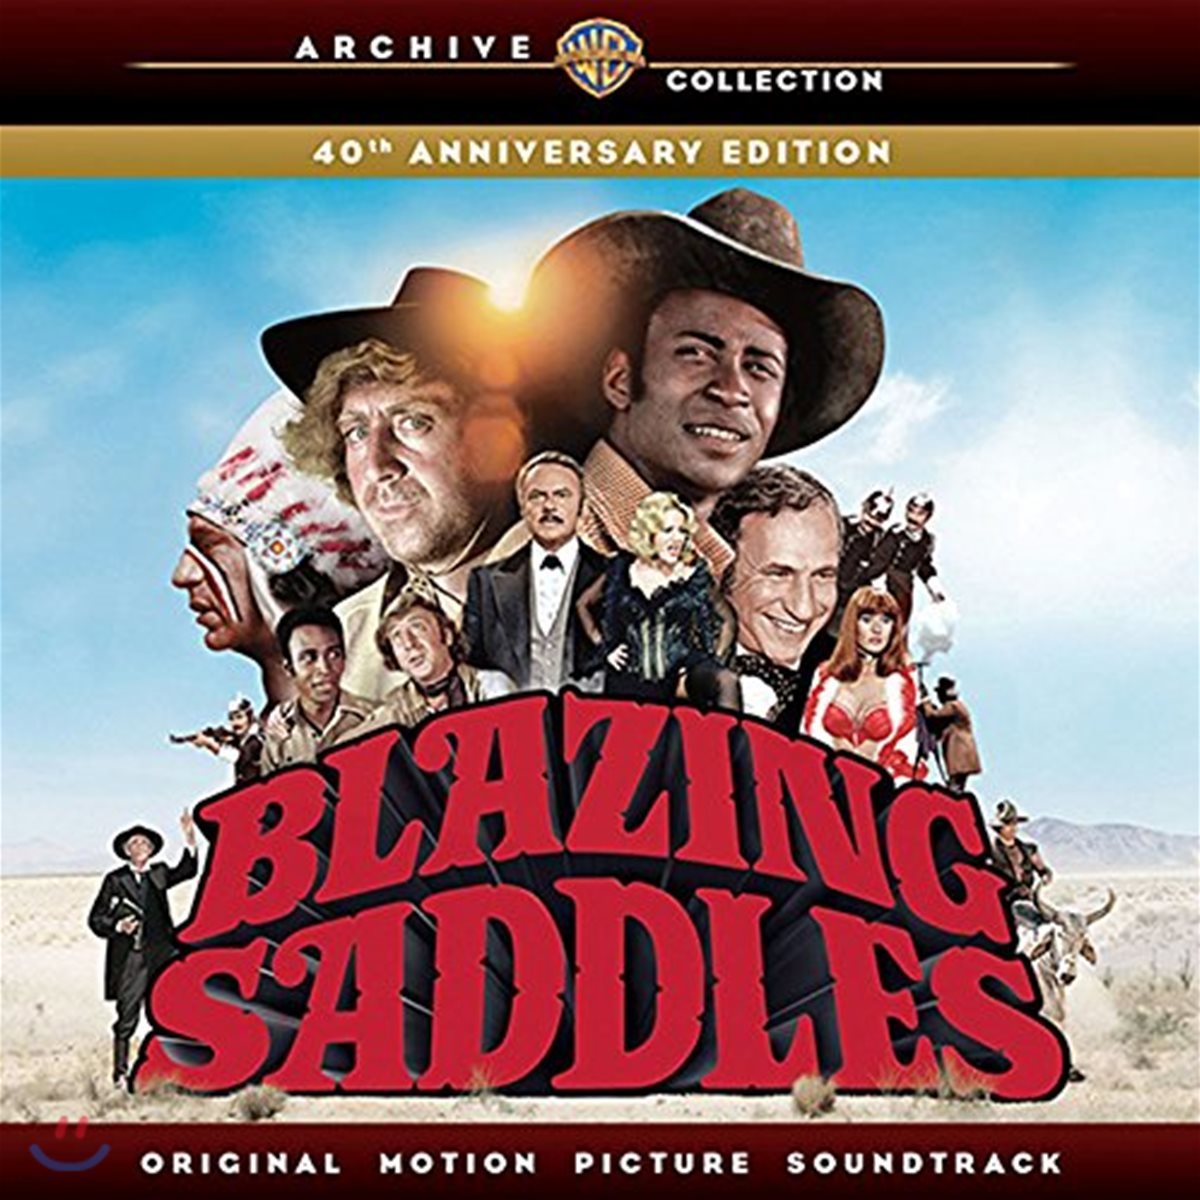 블레이징 새들스 영화음악 (Blazing Saddles OST) [40th Anniversary Edition LP]